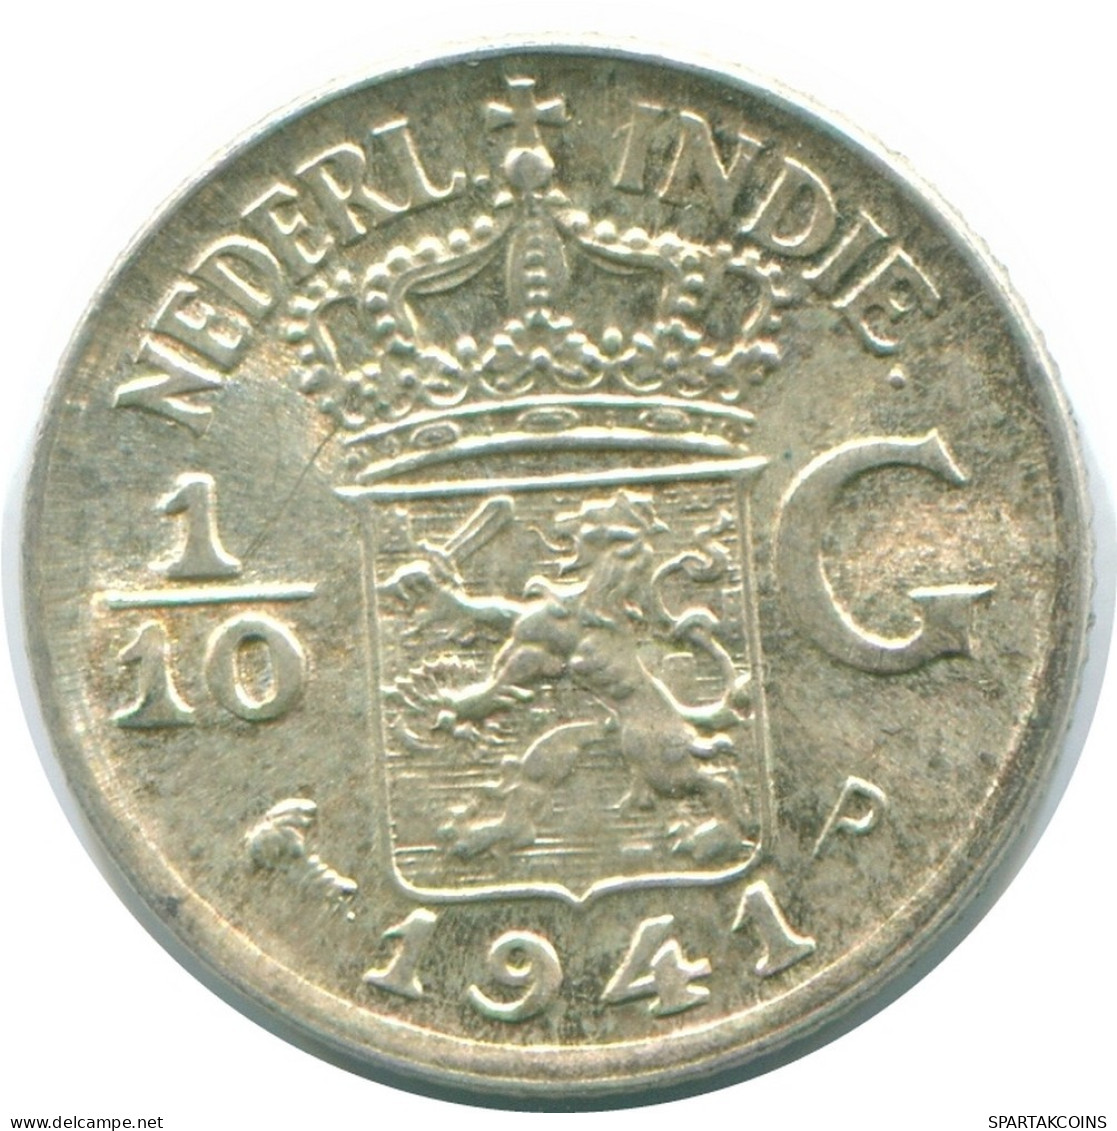 1/10 GULDEN 1941 P NIEDERLANDE OSTINDIEN SILBER Koloniale Münze #NL13762.3.D.A - Indes Néerlandaises